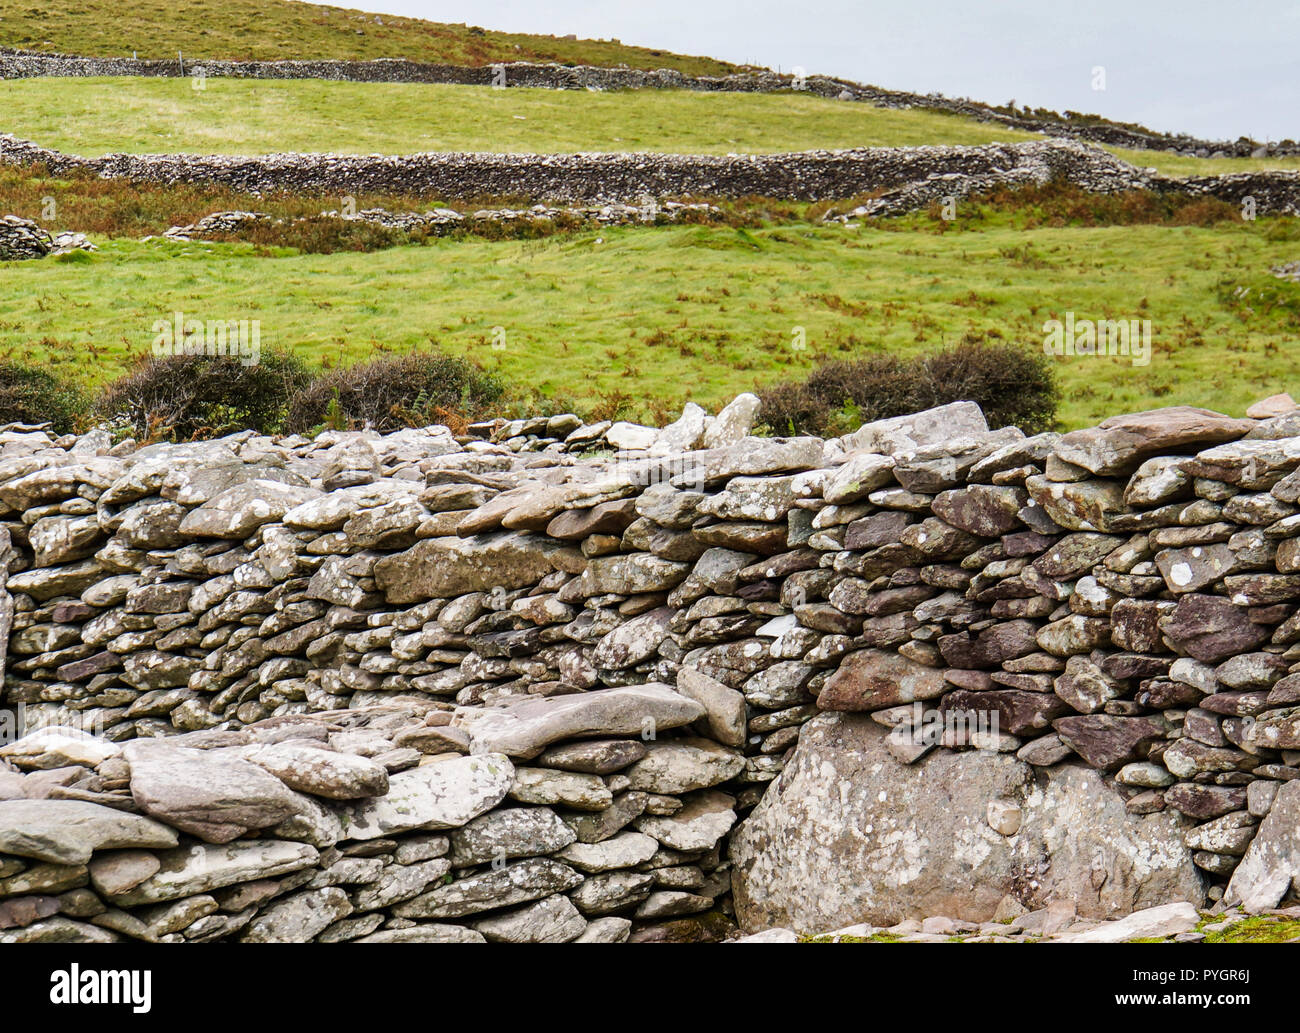 Los antiguos muros de piedra dividiendo la ladera de una colina en la costa Irlandesa, cerca de la antigua colmena chozas Irlandés formado en piedra o encerrados cashels cortijos en el earl Foto de stock